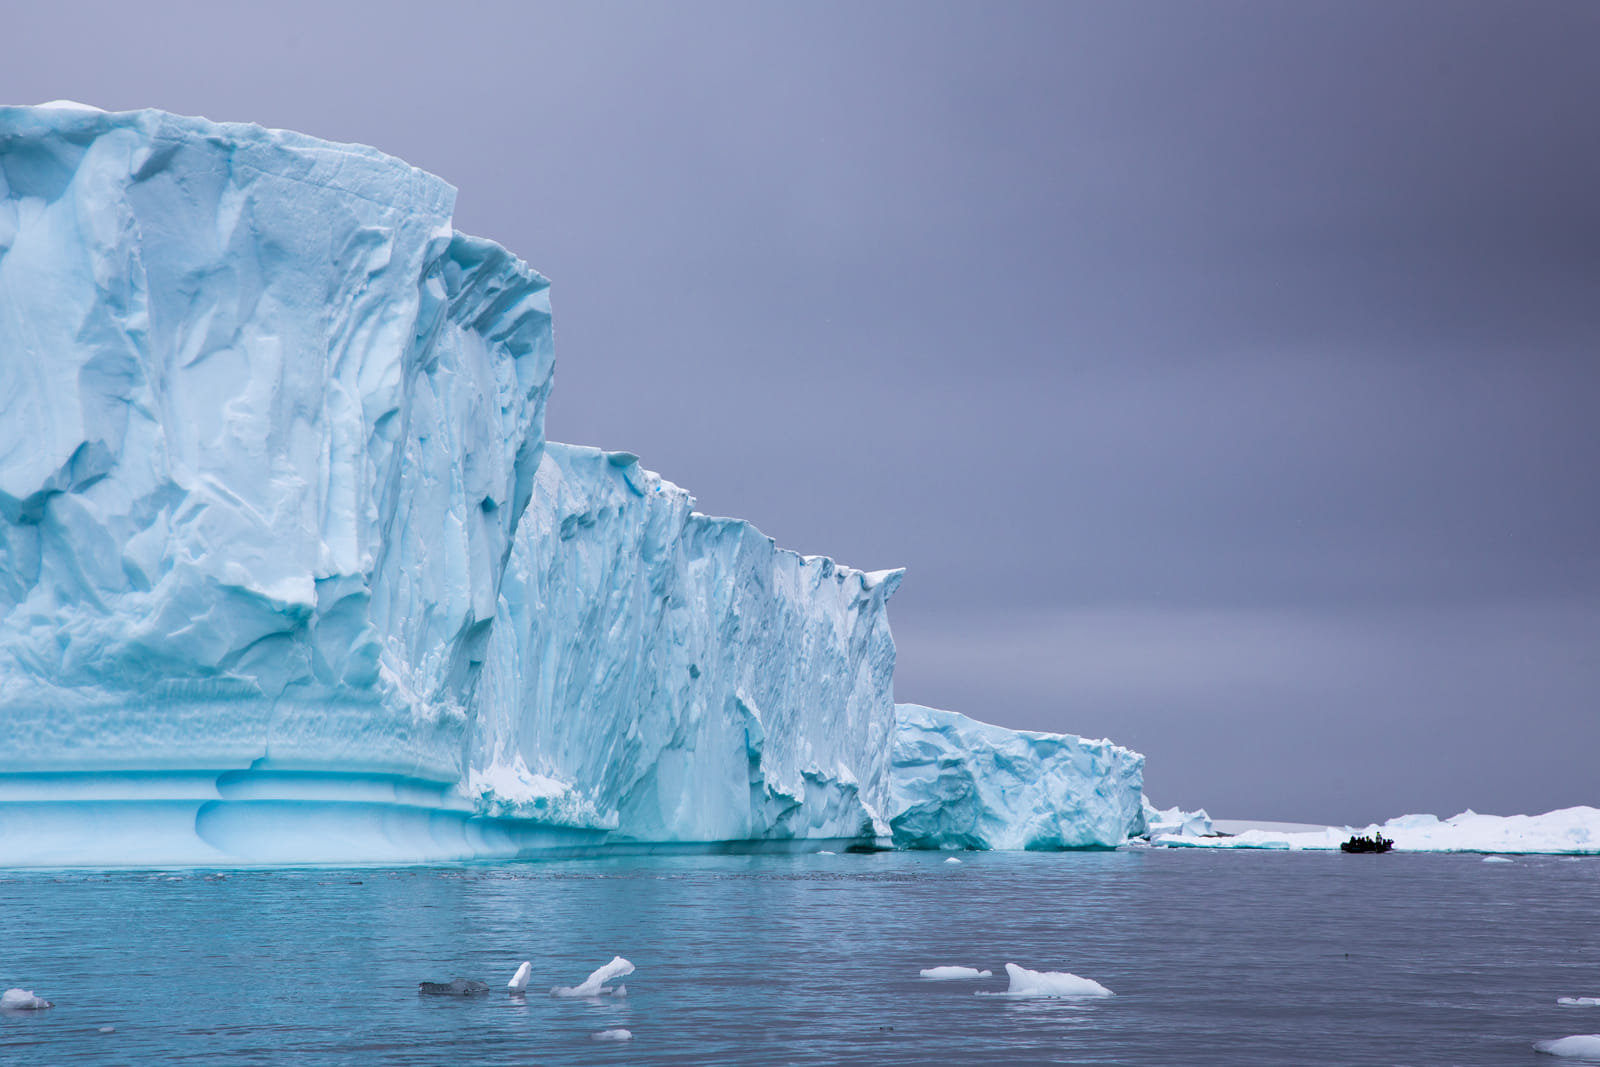 筆者 16 年前首次親眼目睹南極冰山，至今仍對大自然的鬼斧神工心存敬畏。 © Wilson Cheung